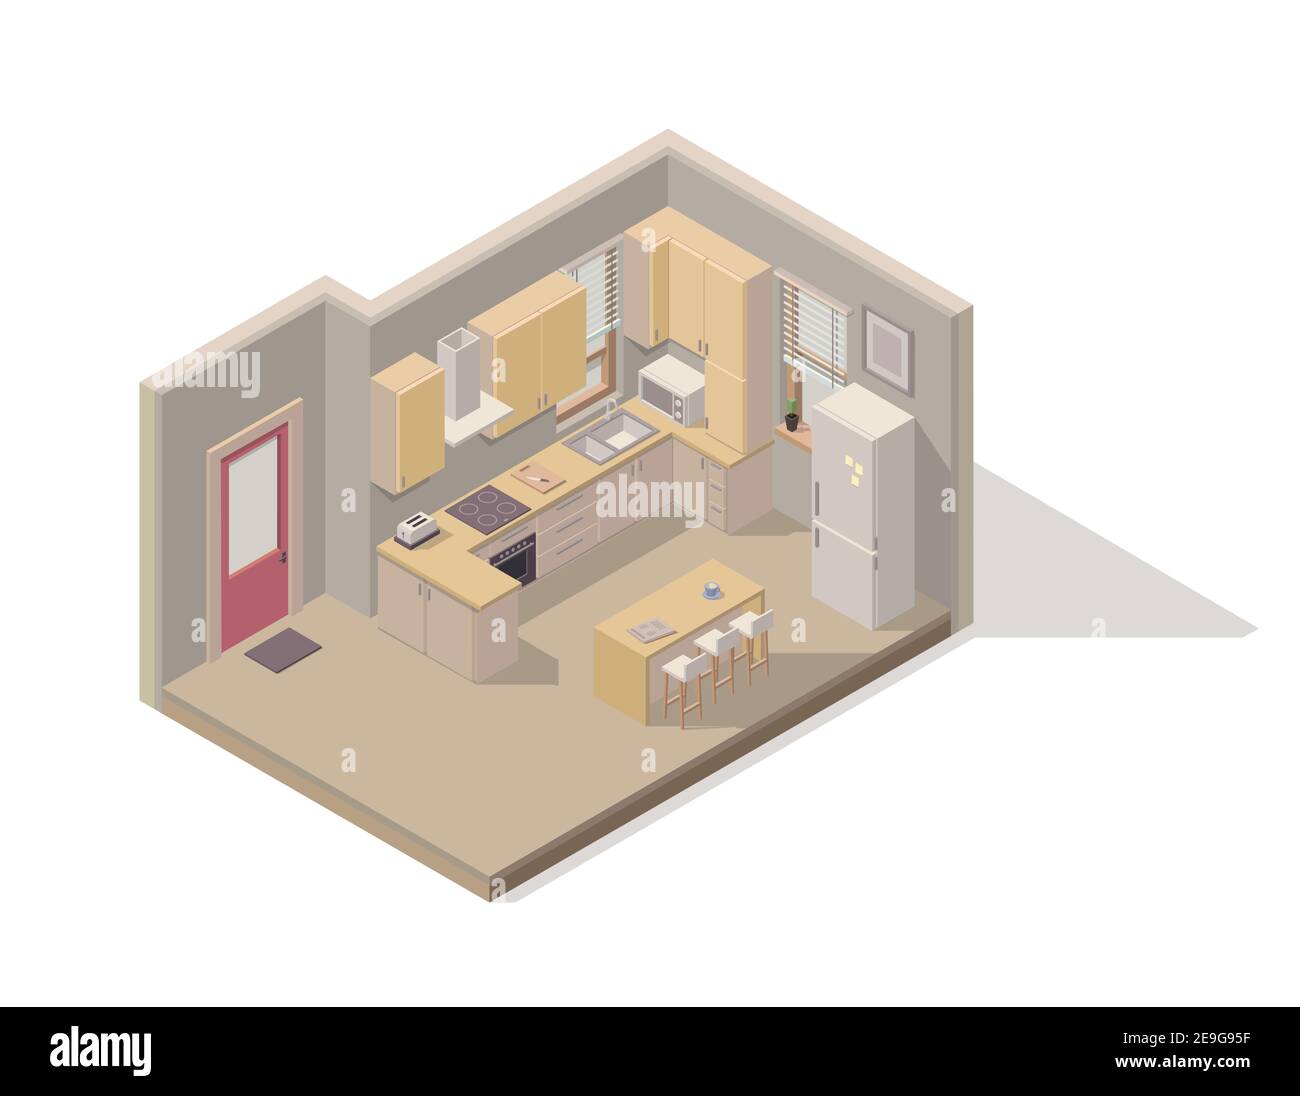 Elément isométrique vectoriel représentant la cuisine/salle à manger/. La chambre comprend des armoires de cuisine, un réfrigérateur, une cuisinière, un four, une table à manger, des tabourets et d'autres Illustration de Vecteur